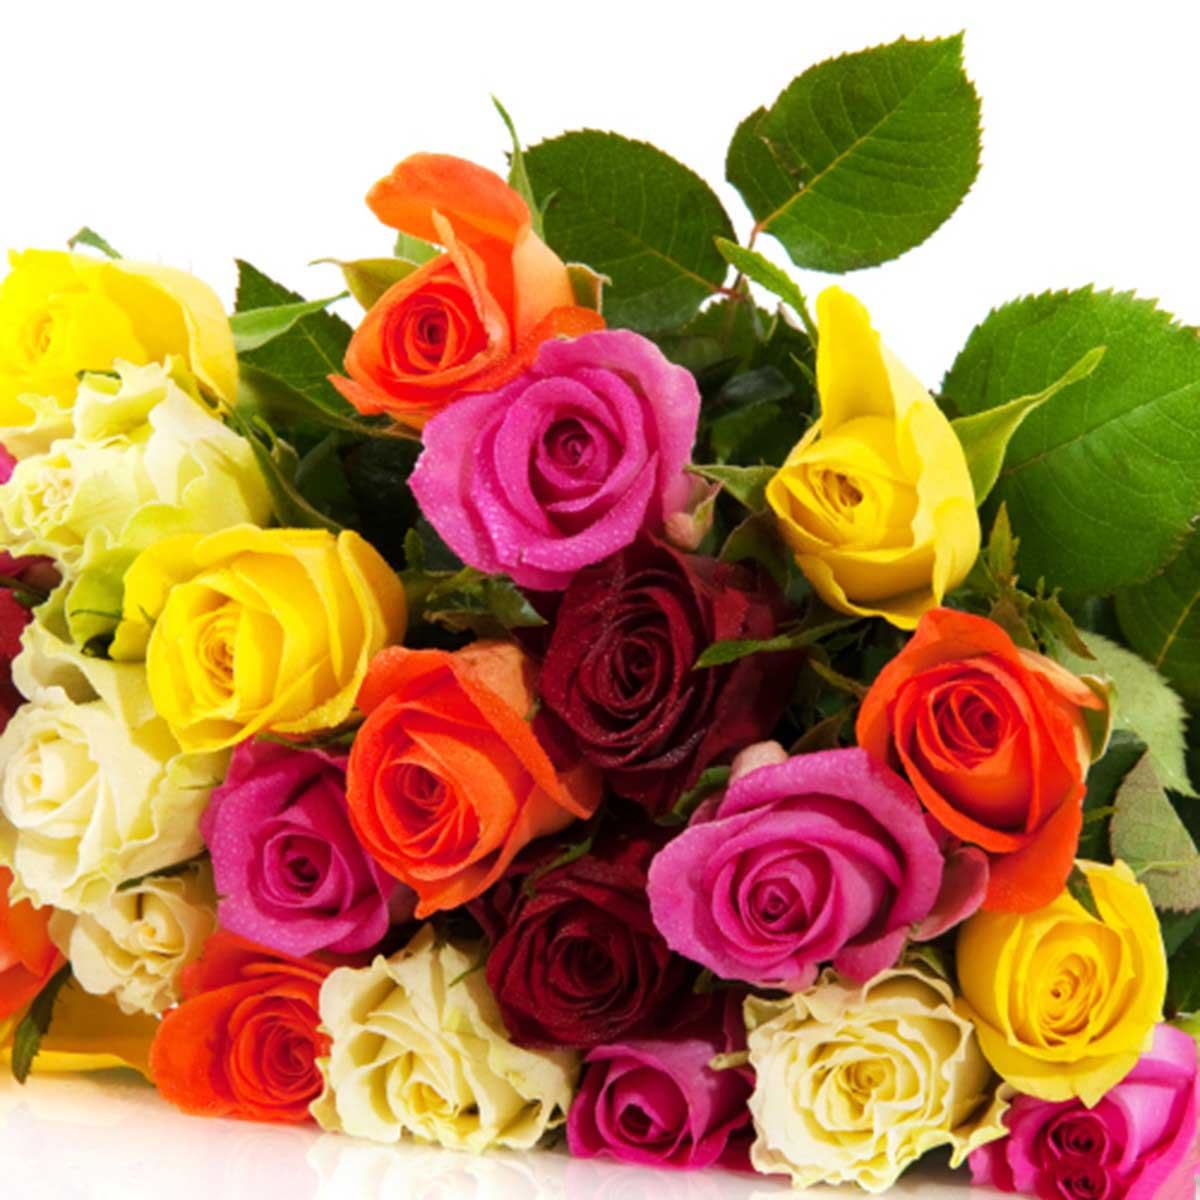 Hình ảnh hoa Hồng đẹp - Tổng hợp những hình ảnh hoa Hồng đẹp nhất ...